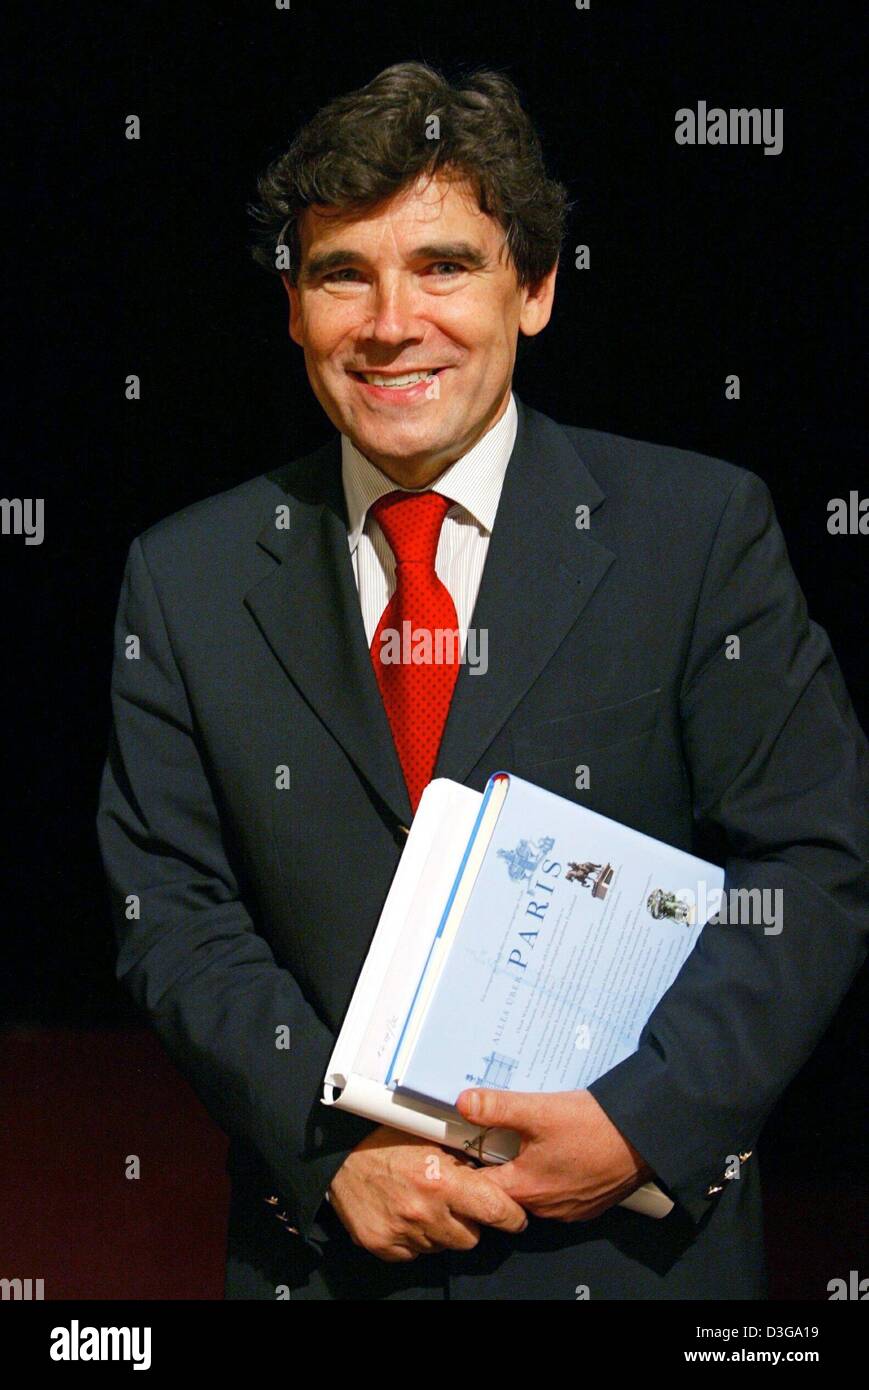 Politique pol diplomatie souriant livre cravate rouge costume allemagne  Banque de photographies et d'images à haute résolution - Alamy